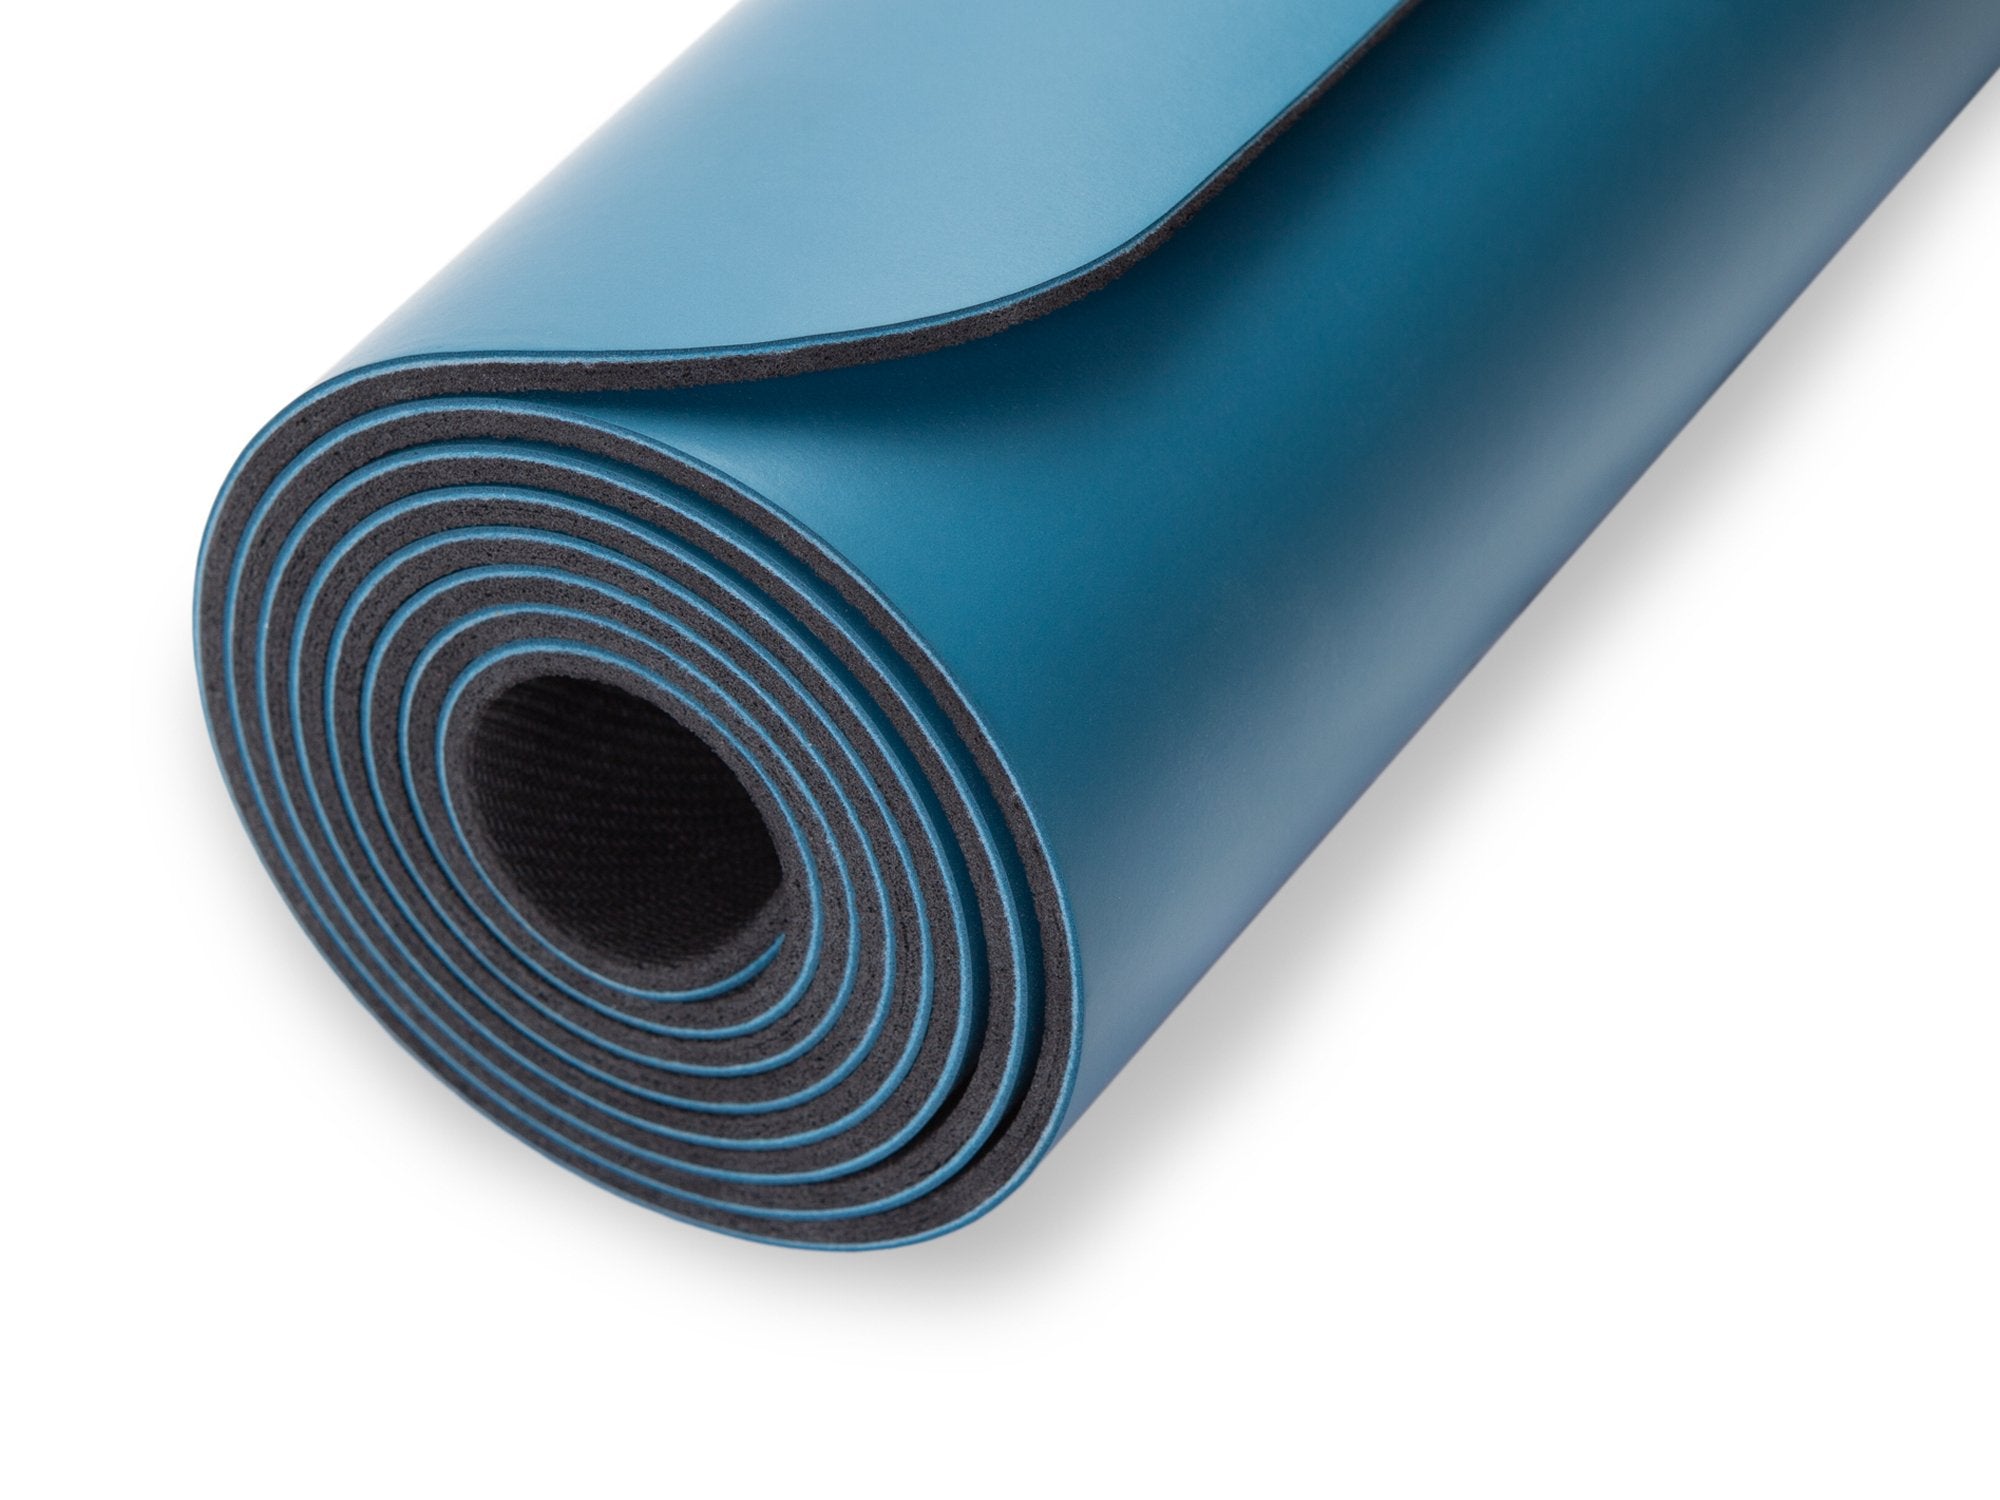 Mocana Nimbus Blue Yoga Mat